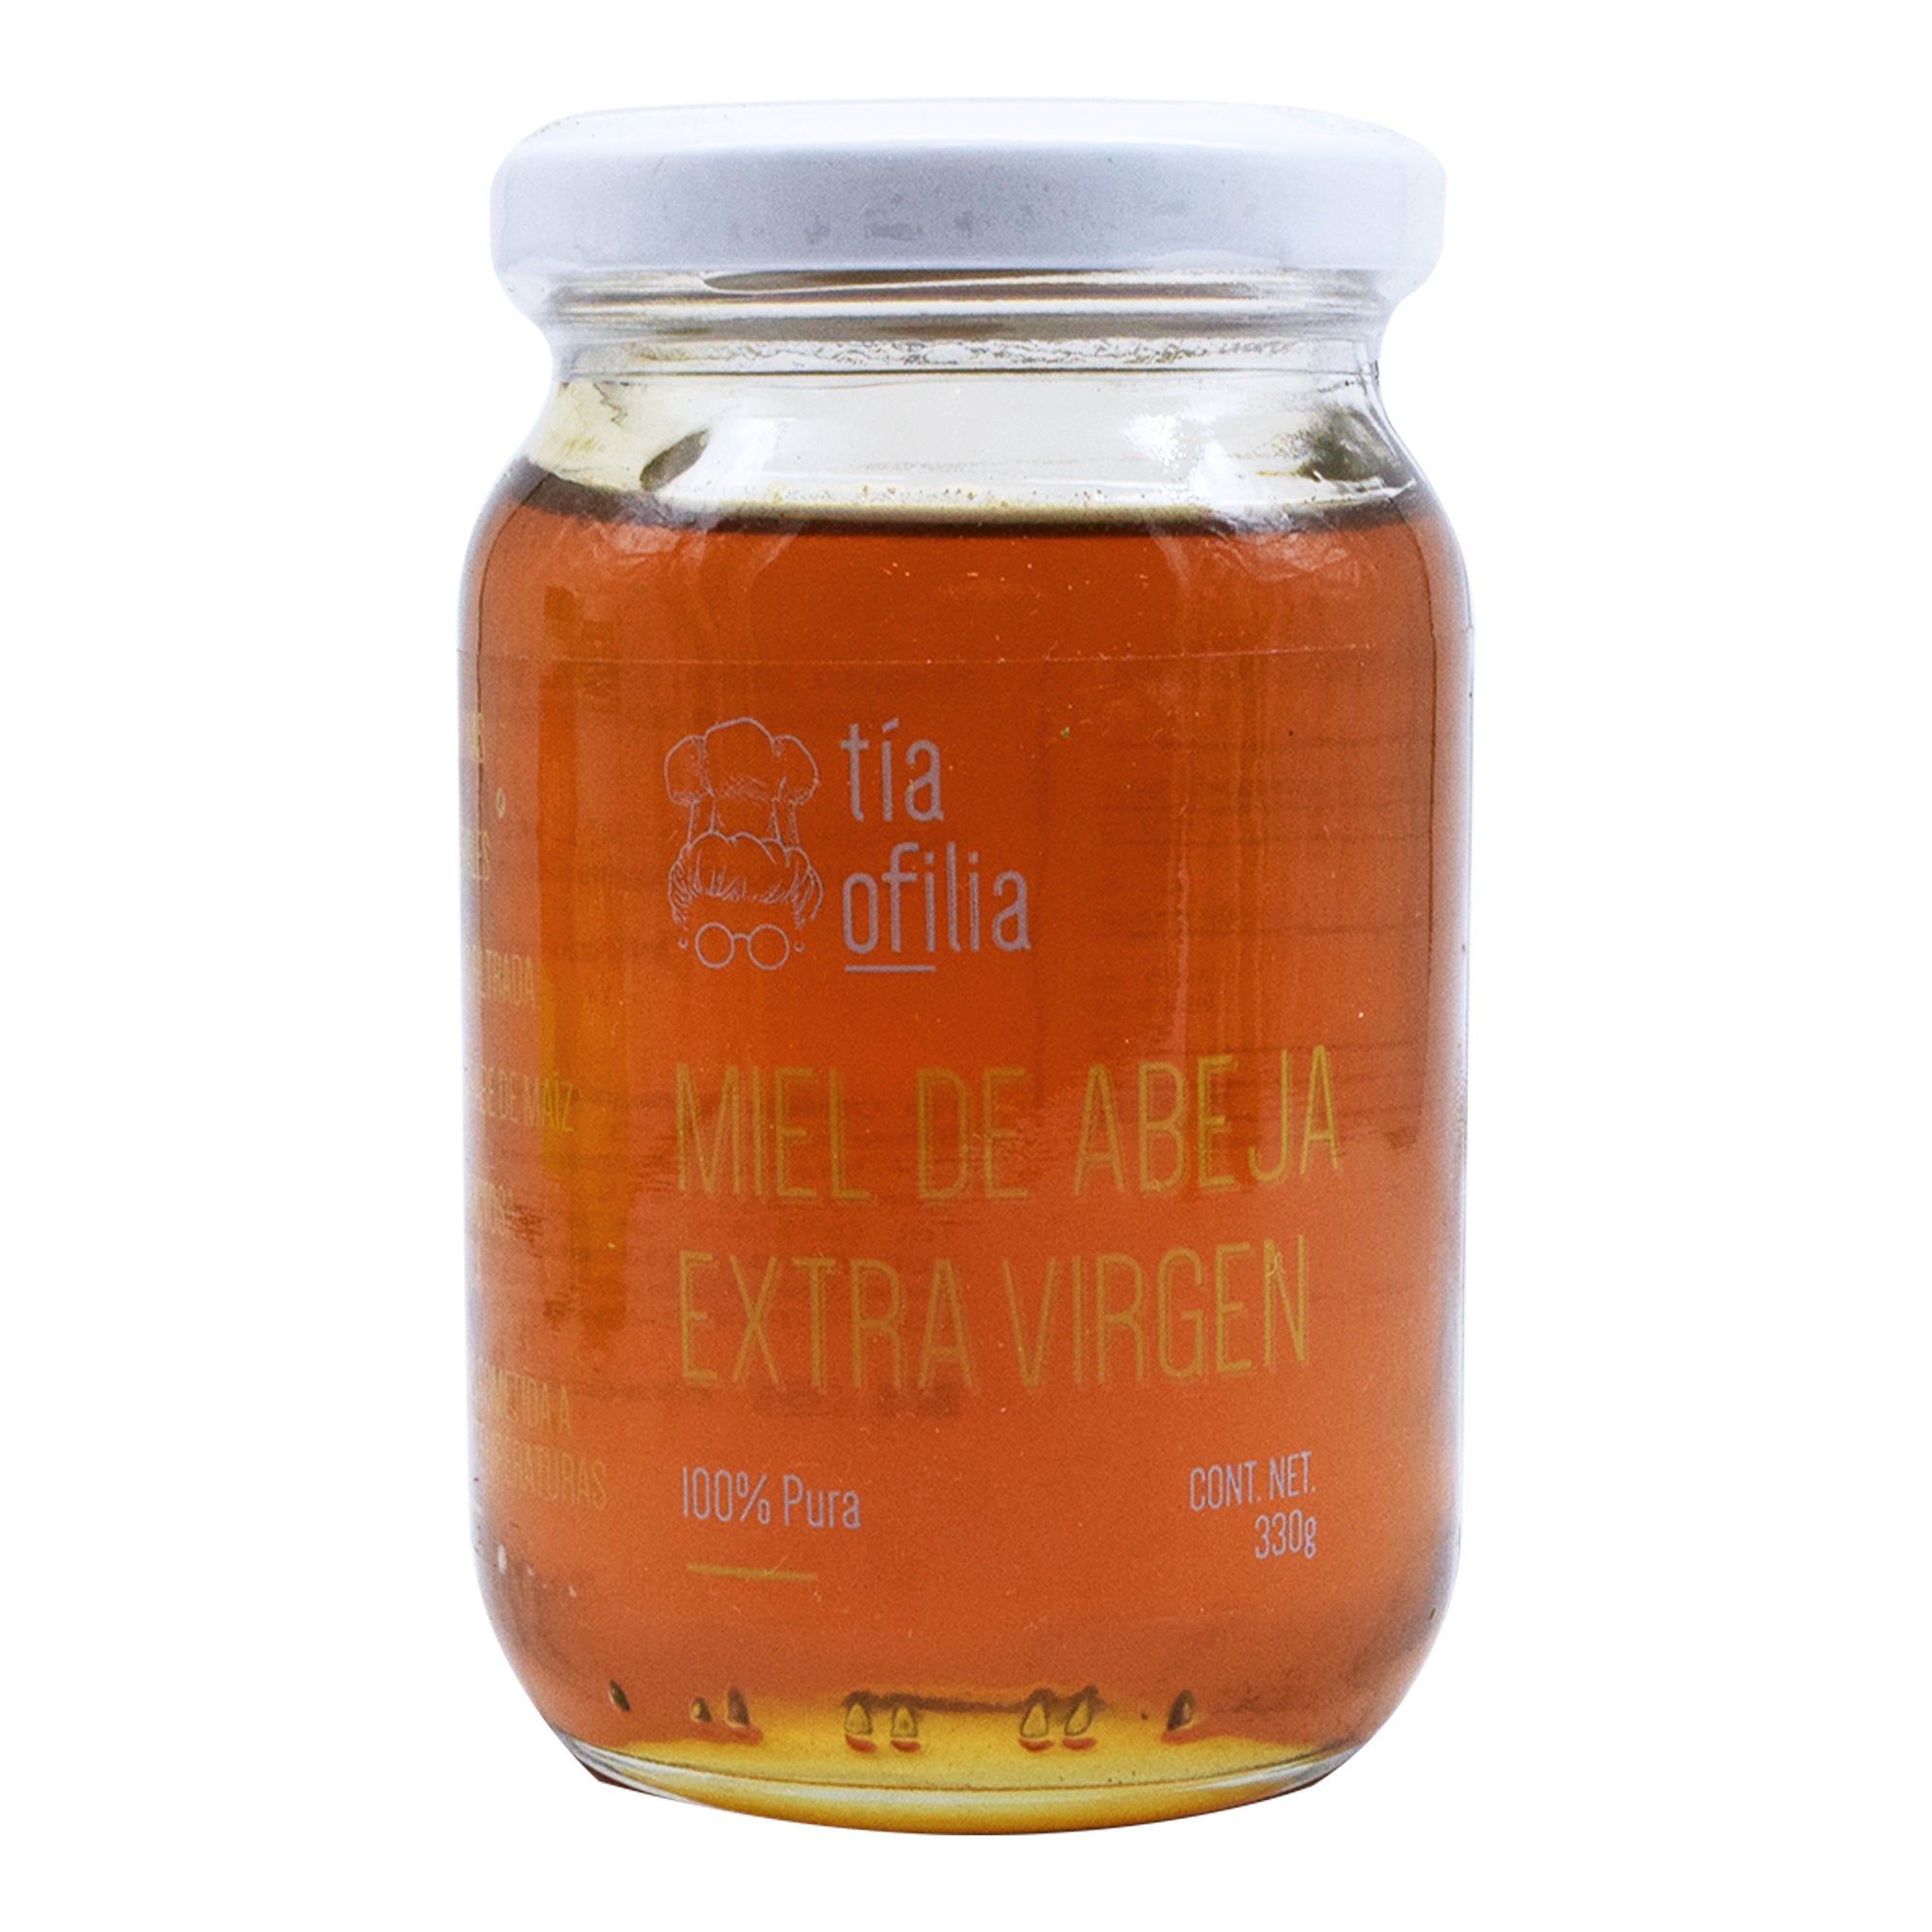 Miel de abeja extra virgen 330 g